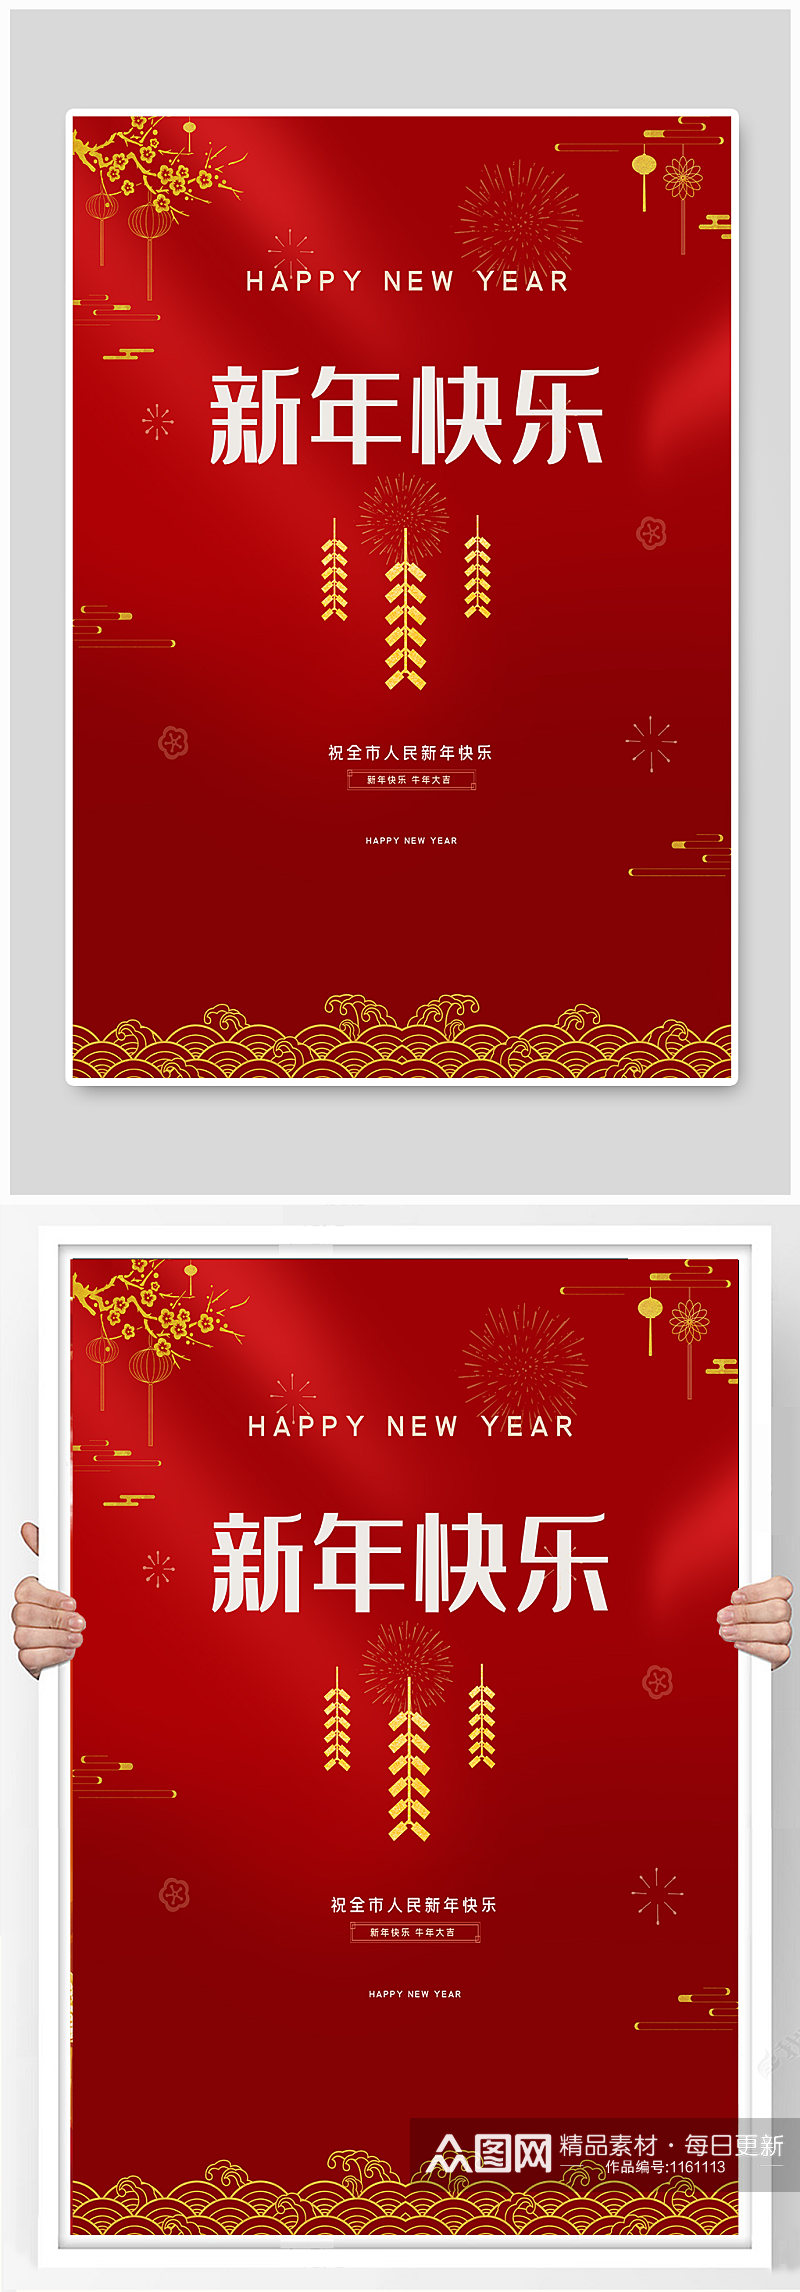 新年快乐红色喜庆地产节日海报素材